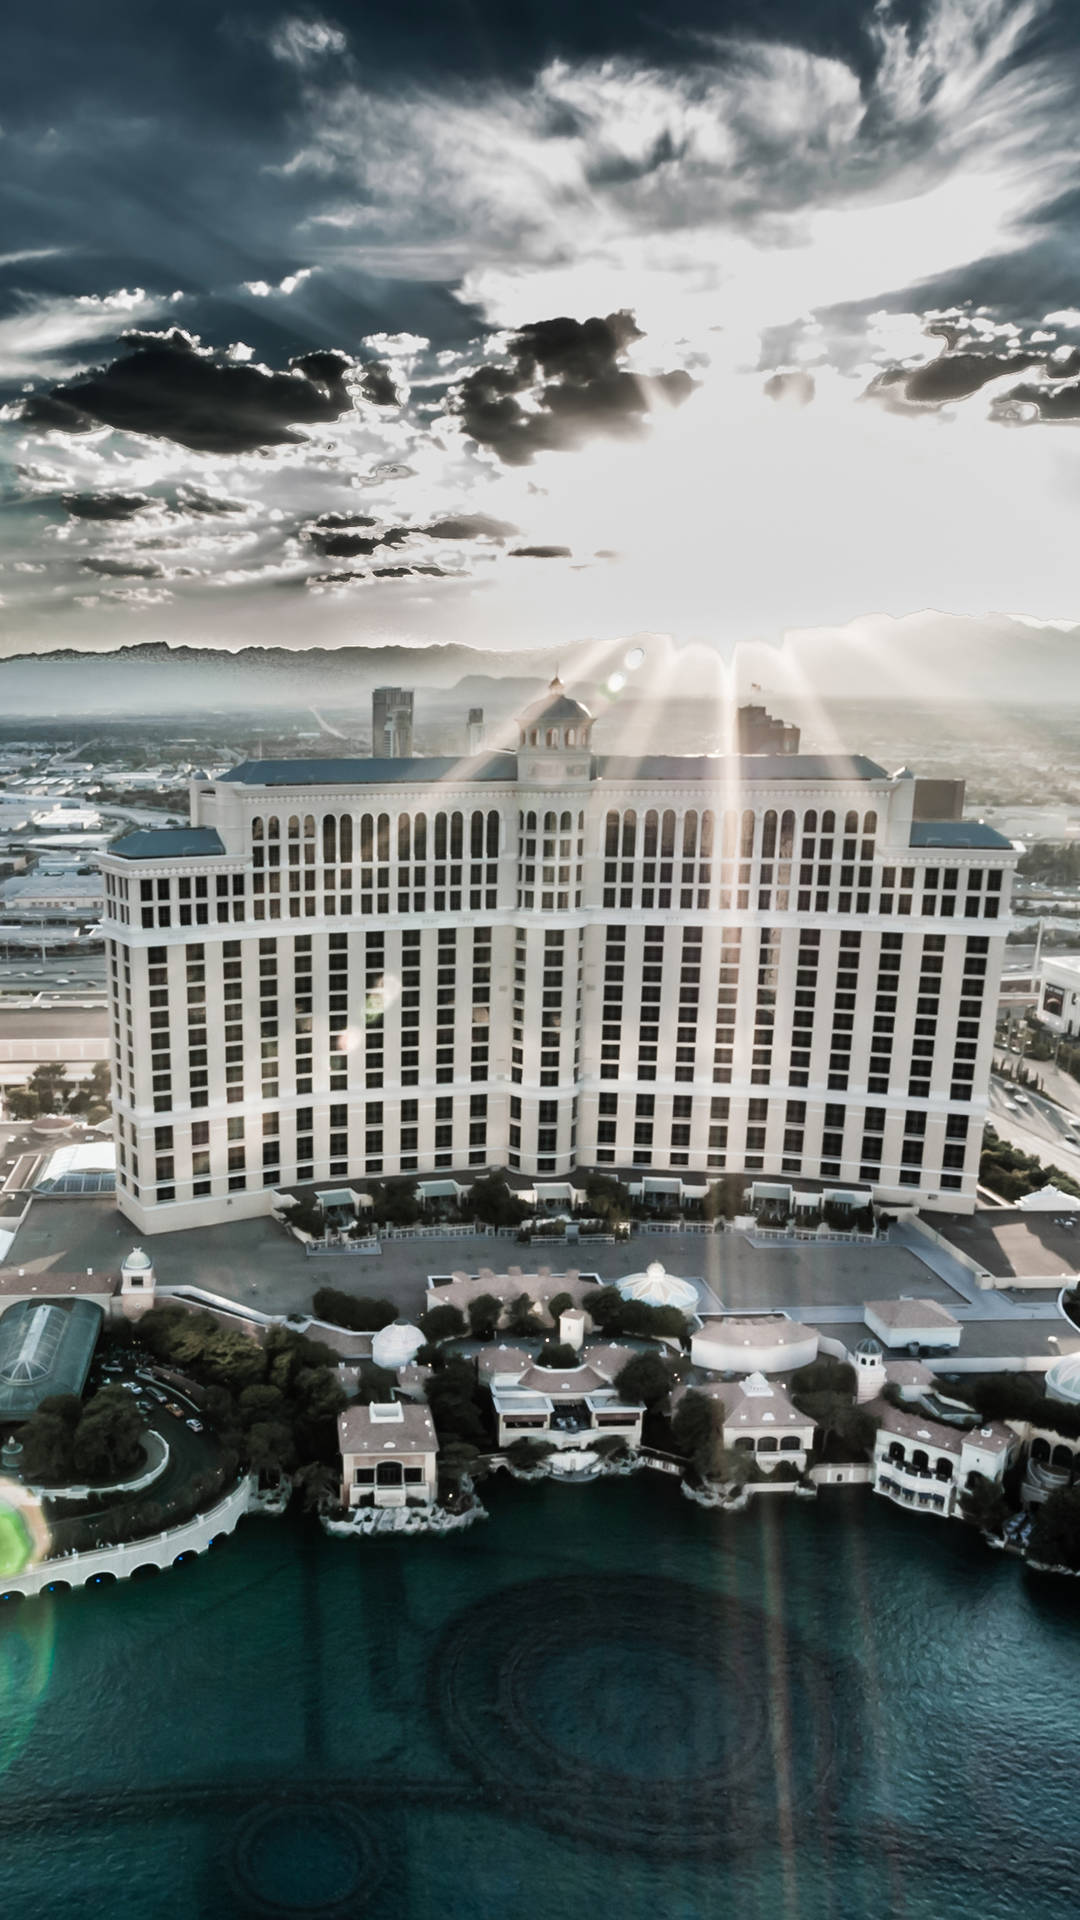 Bellagiohotel Y Casino En Las Vegas Iphone. Fondo de pantalla